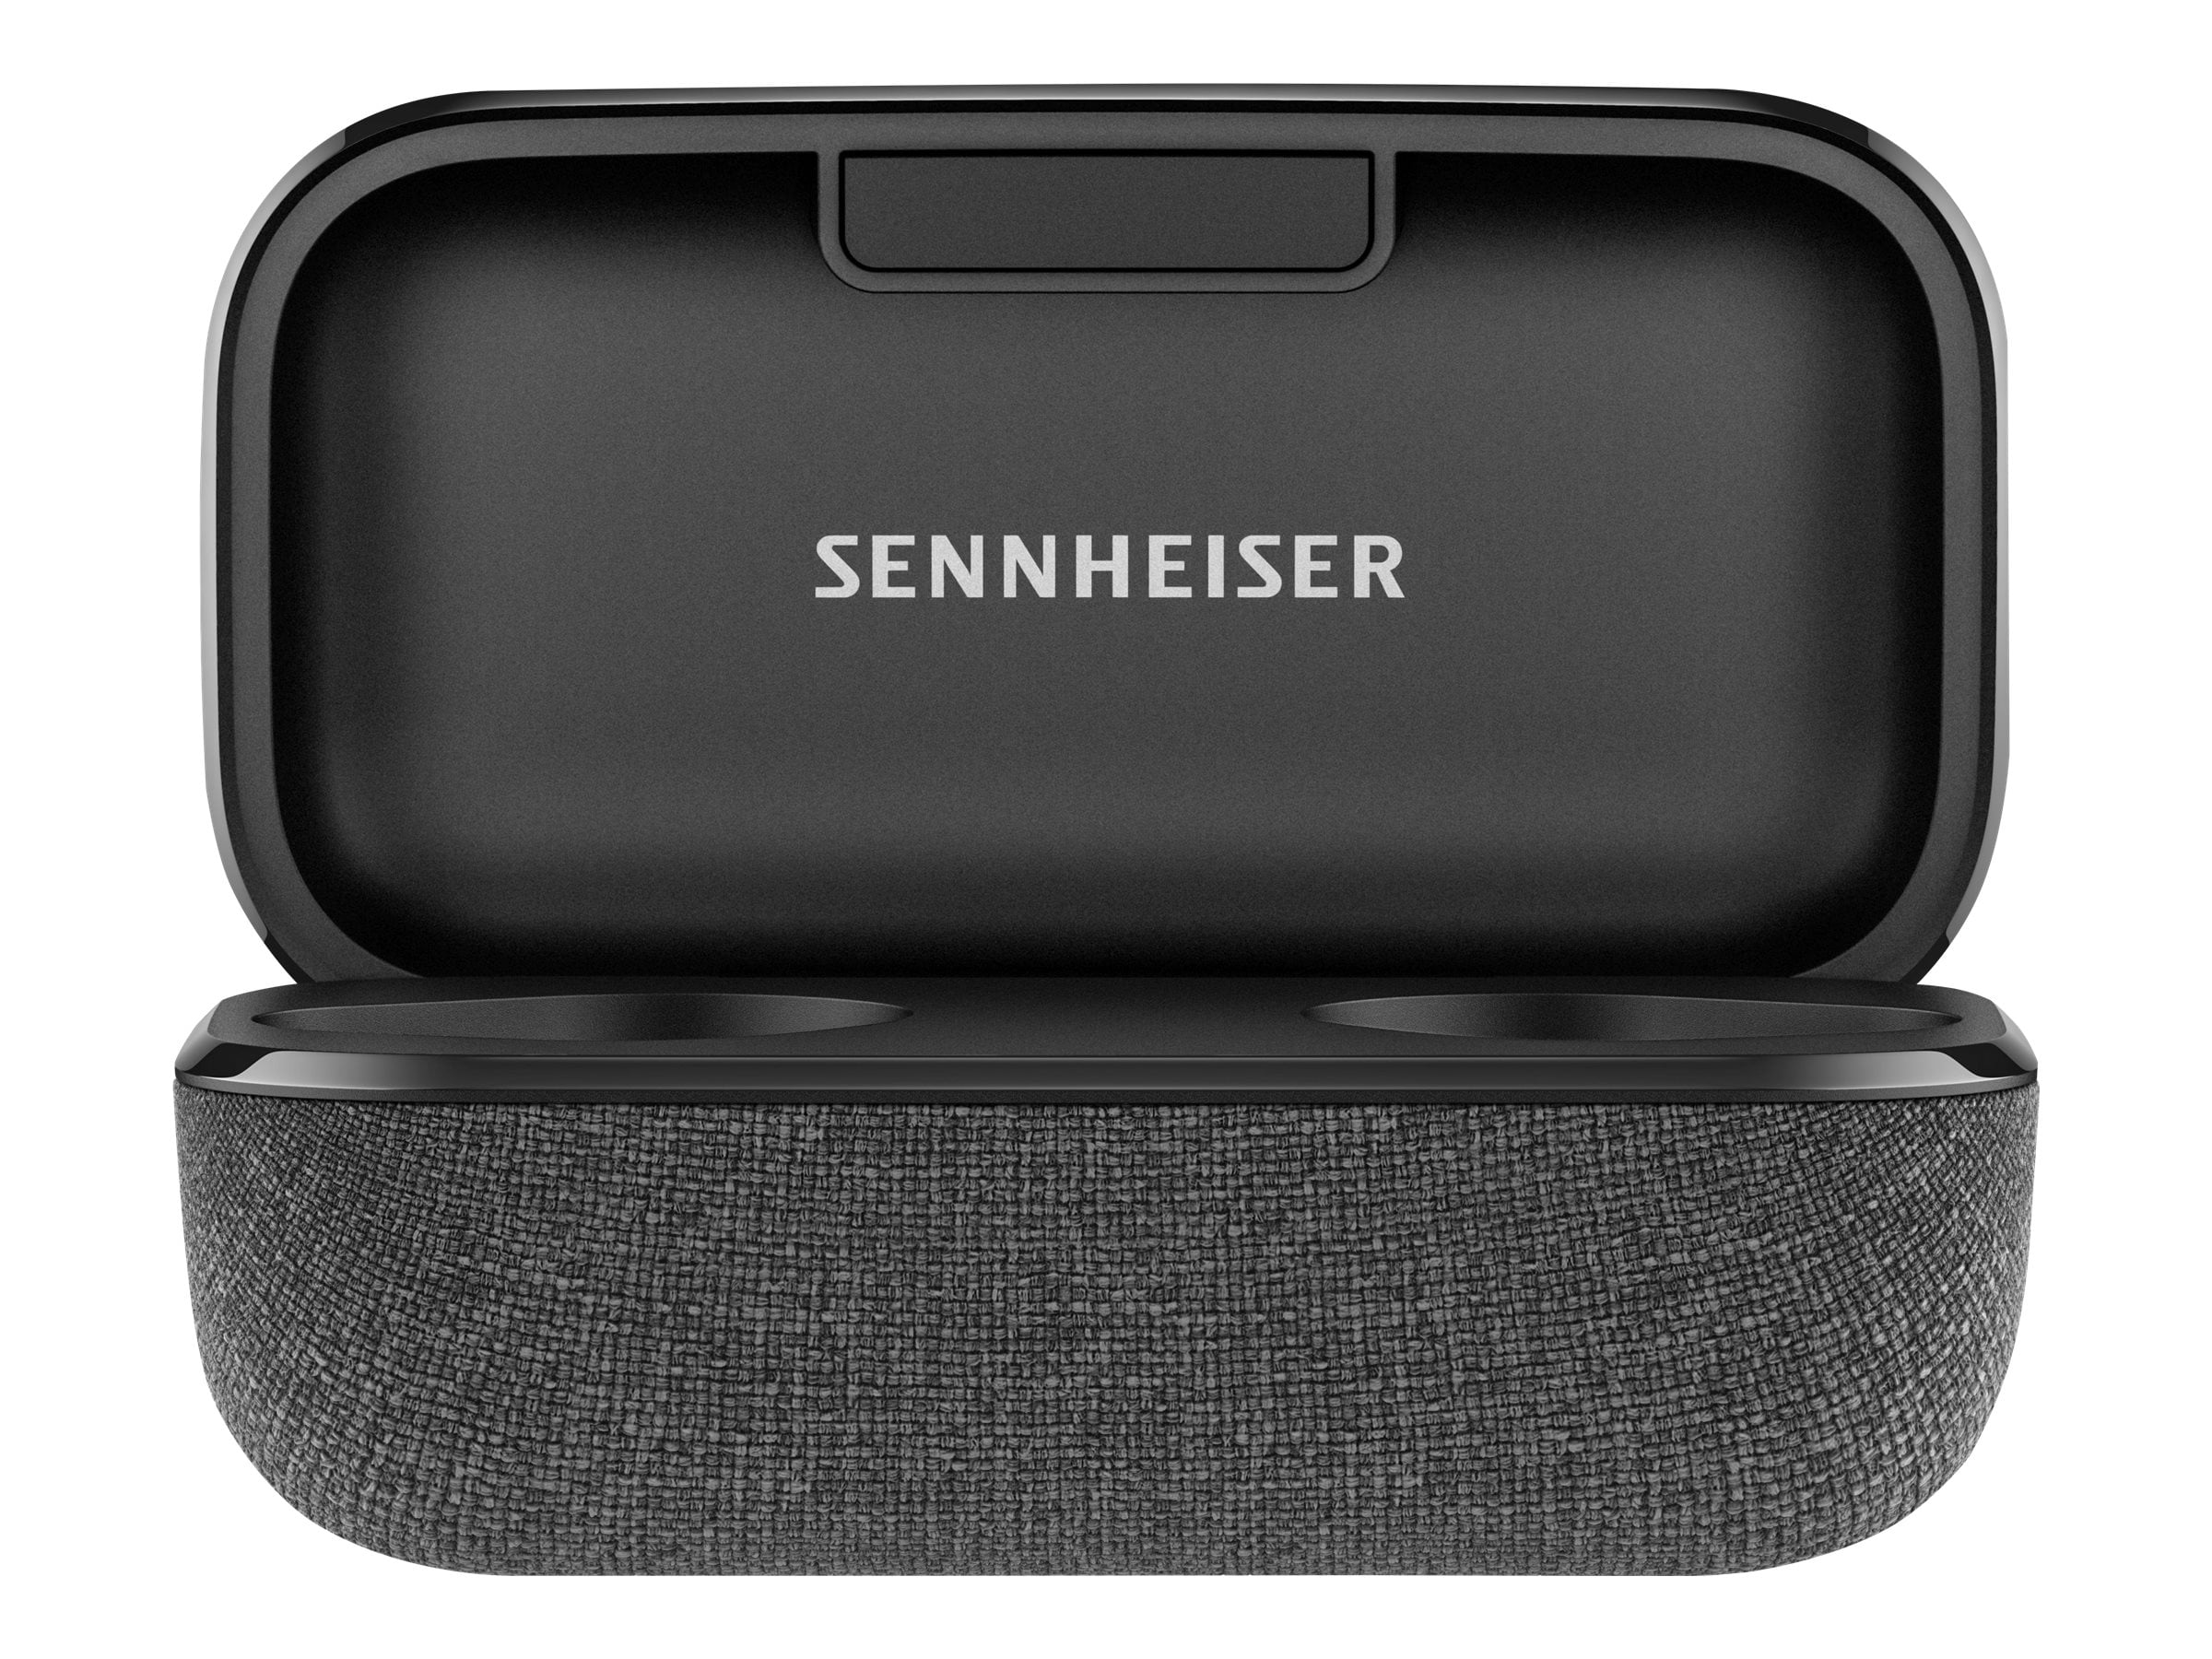 Sennheiser MOMENTUM True Wireless 2 - True wireless earphones with 